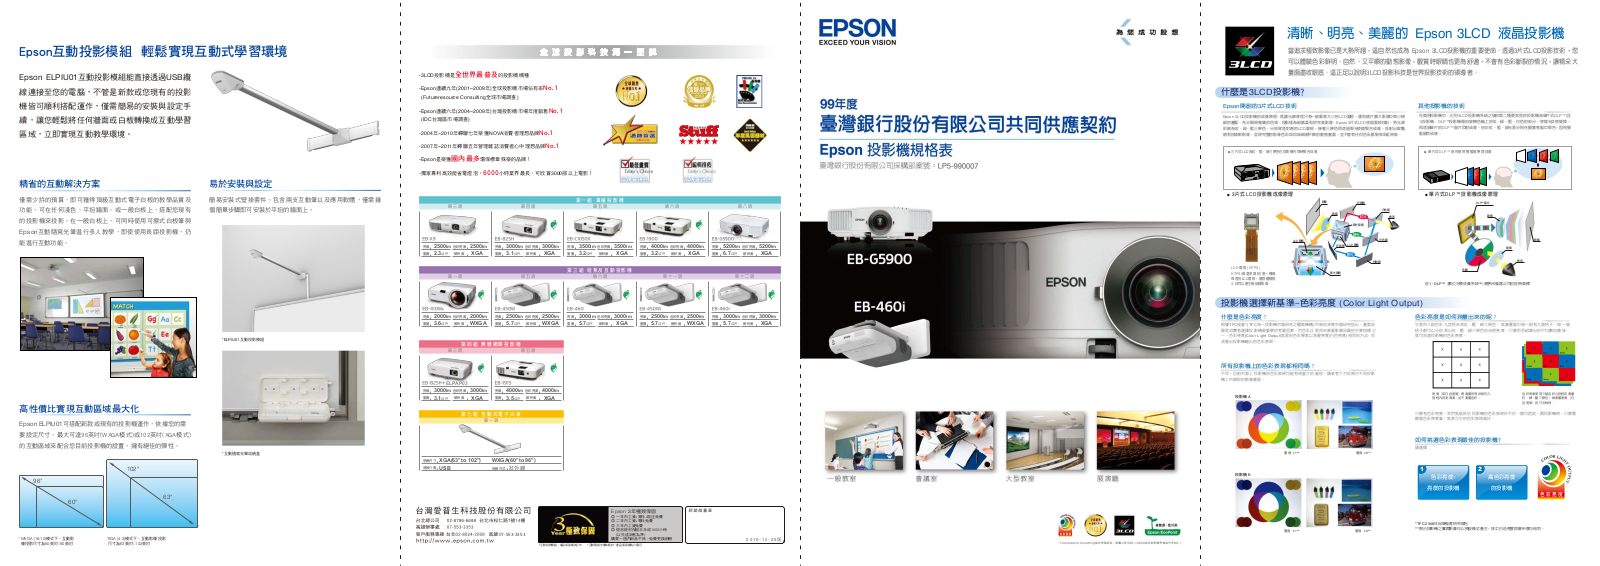 EPSON EB-G5900, EB-460i service manual